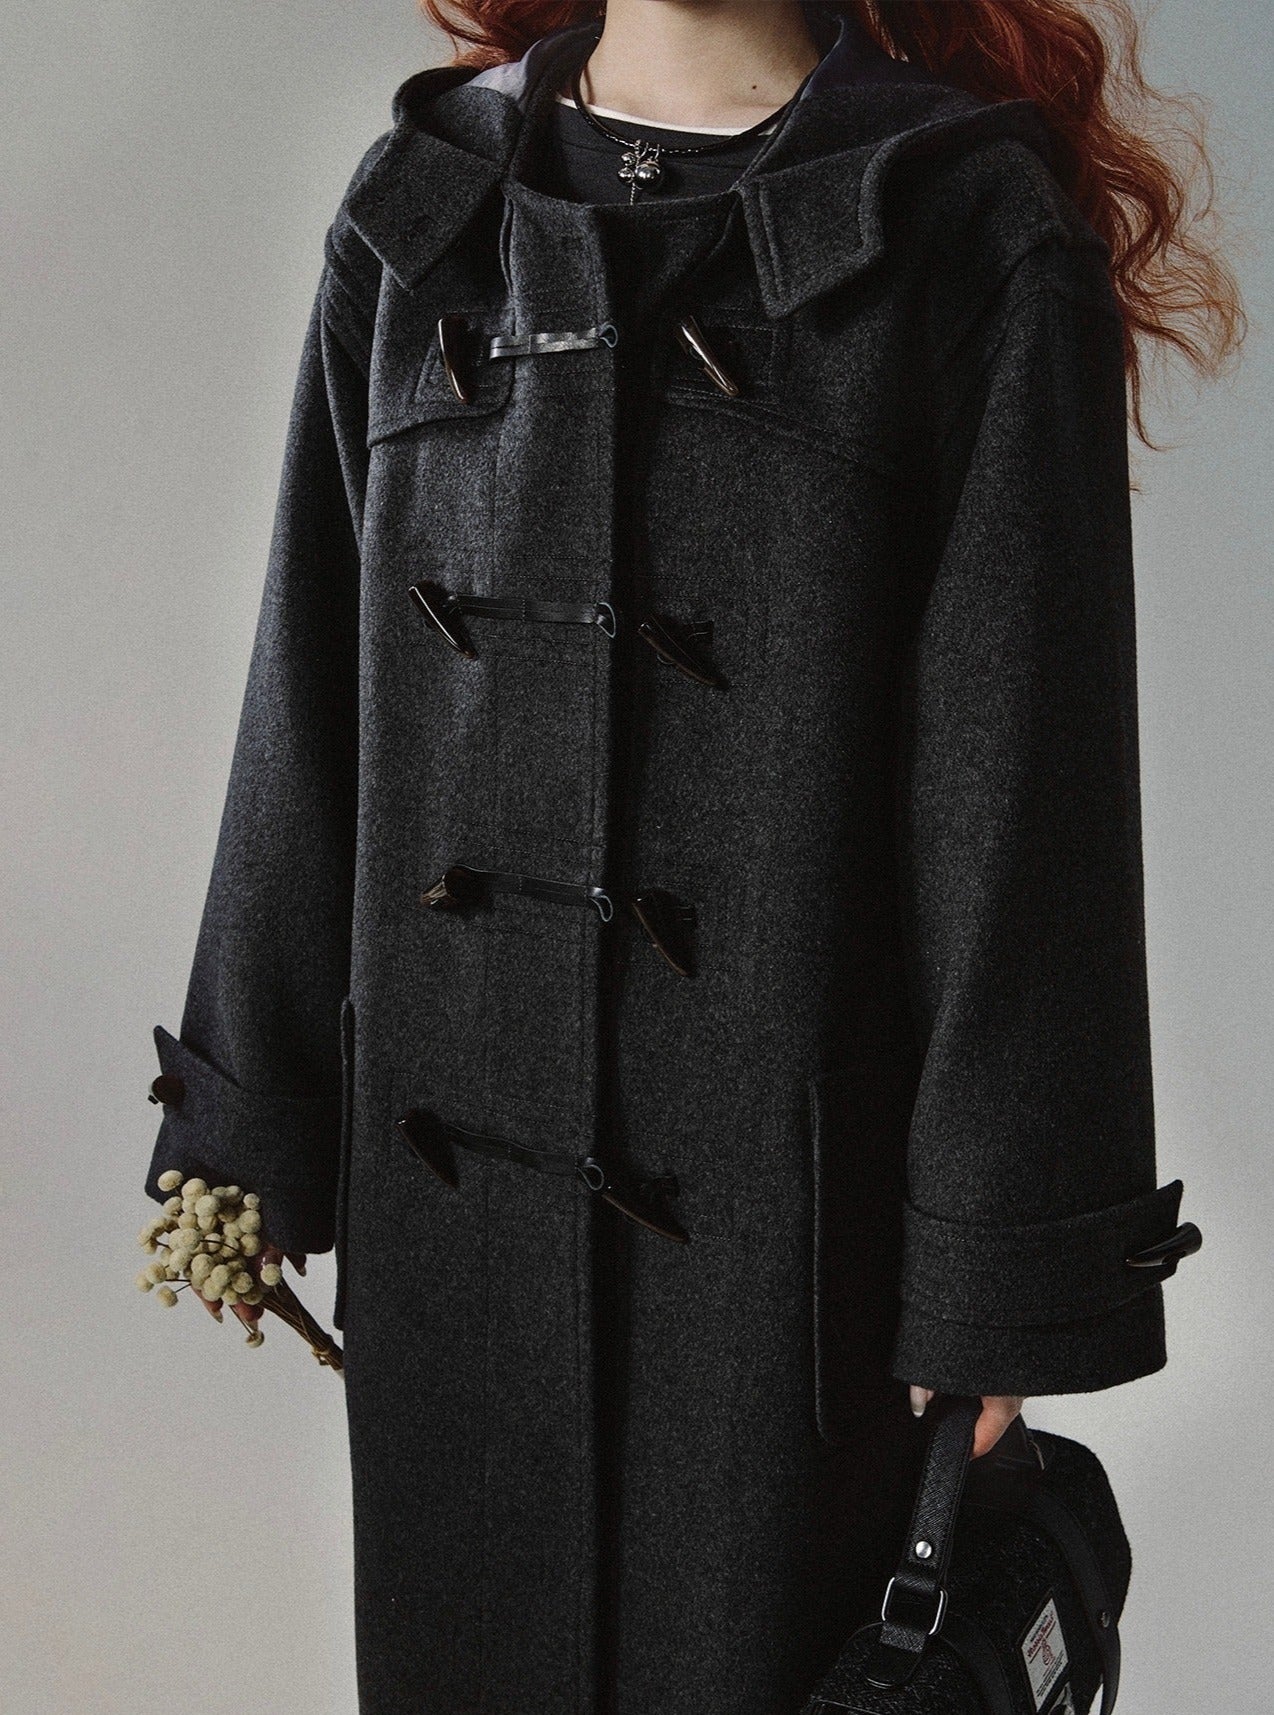 Vintage long tweed Coat